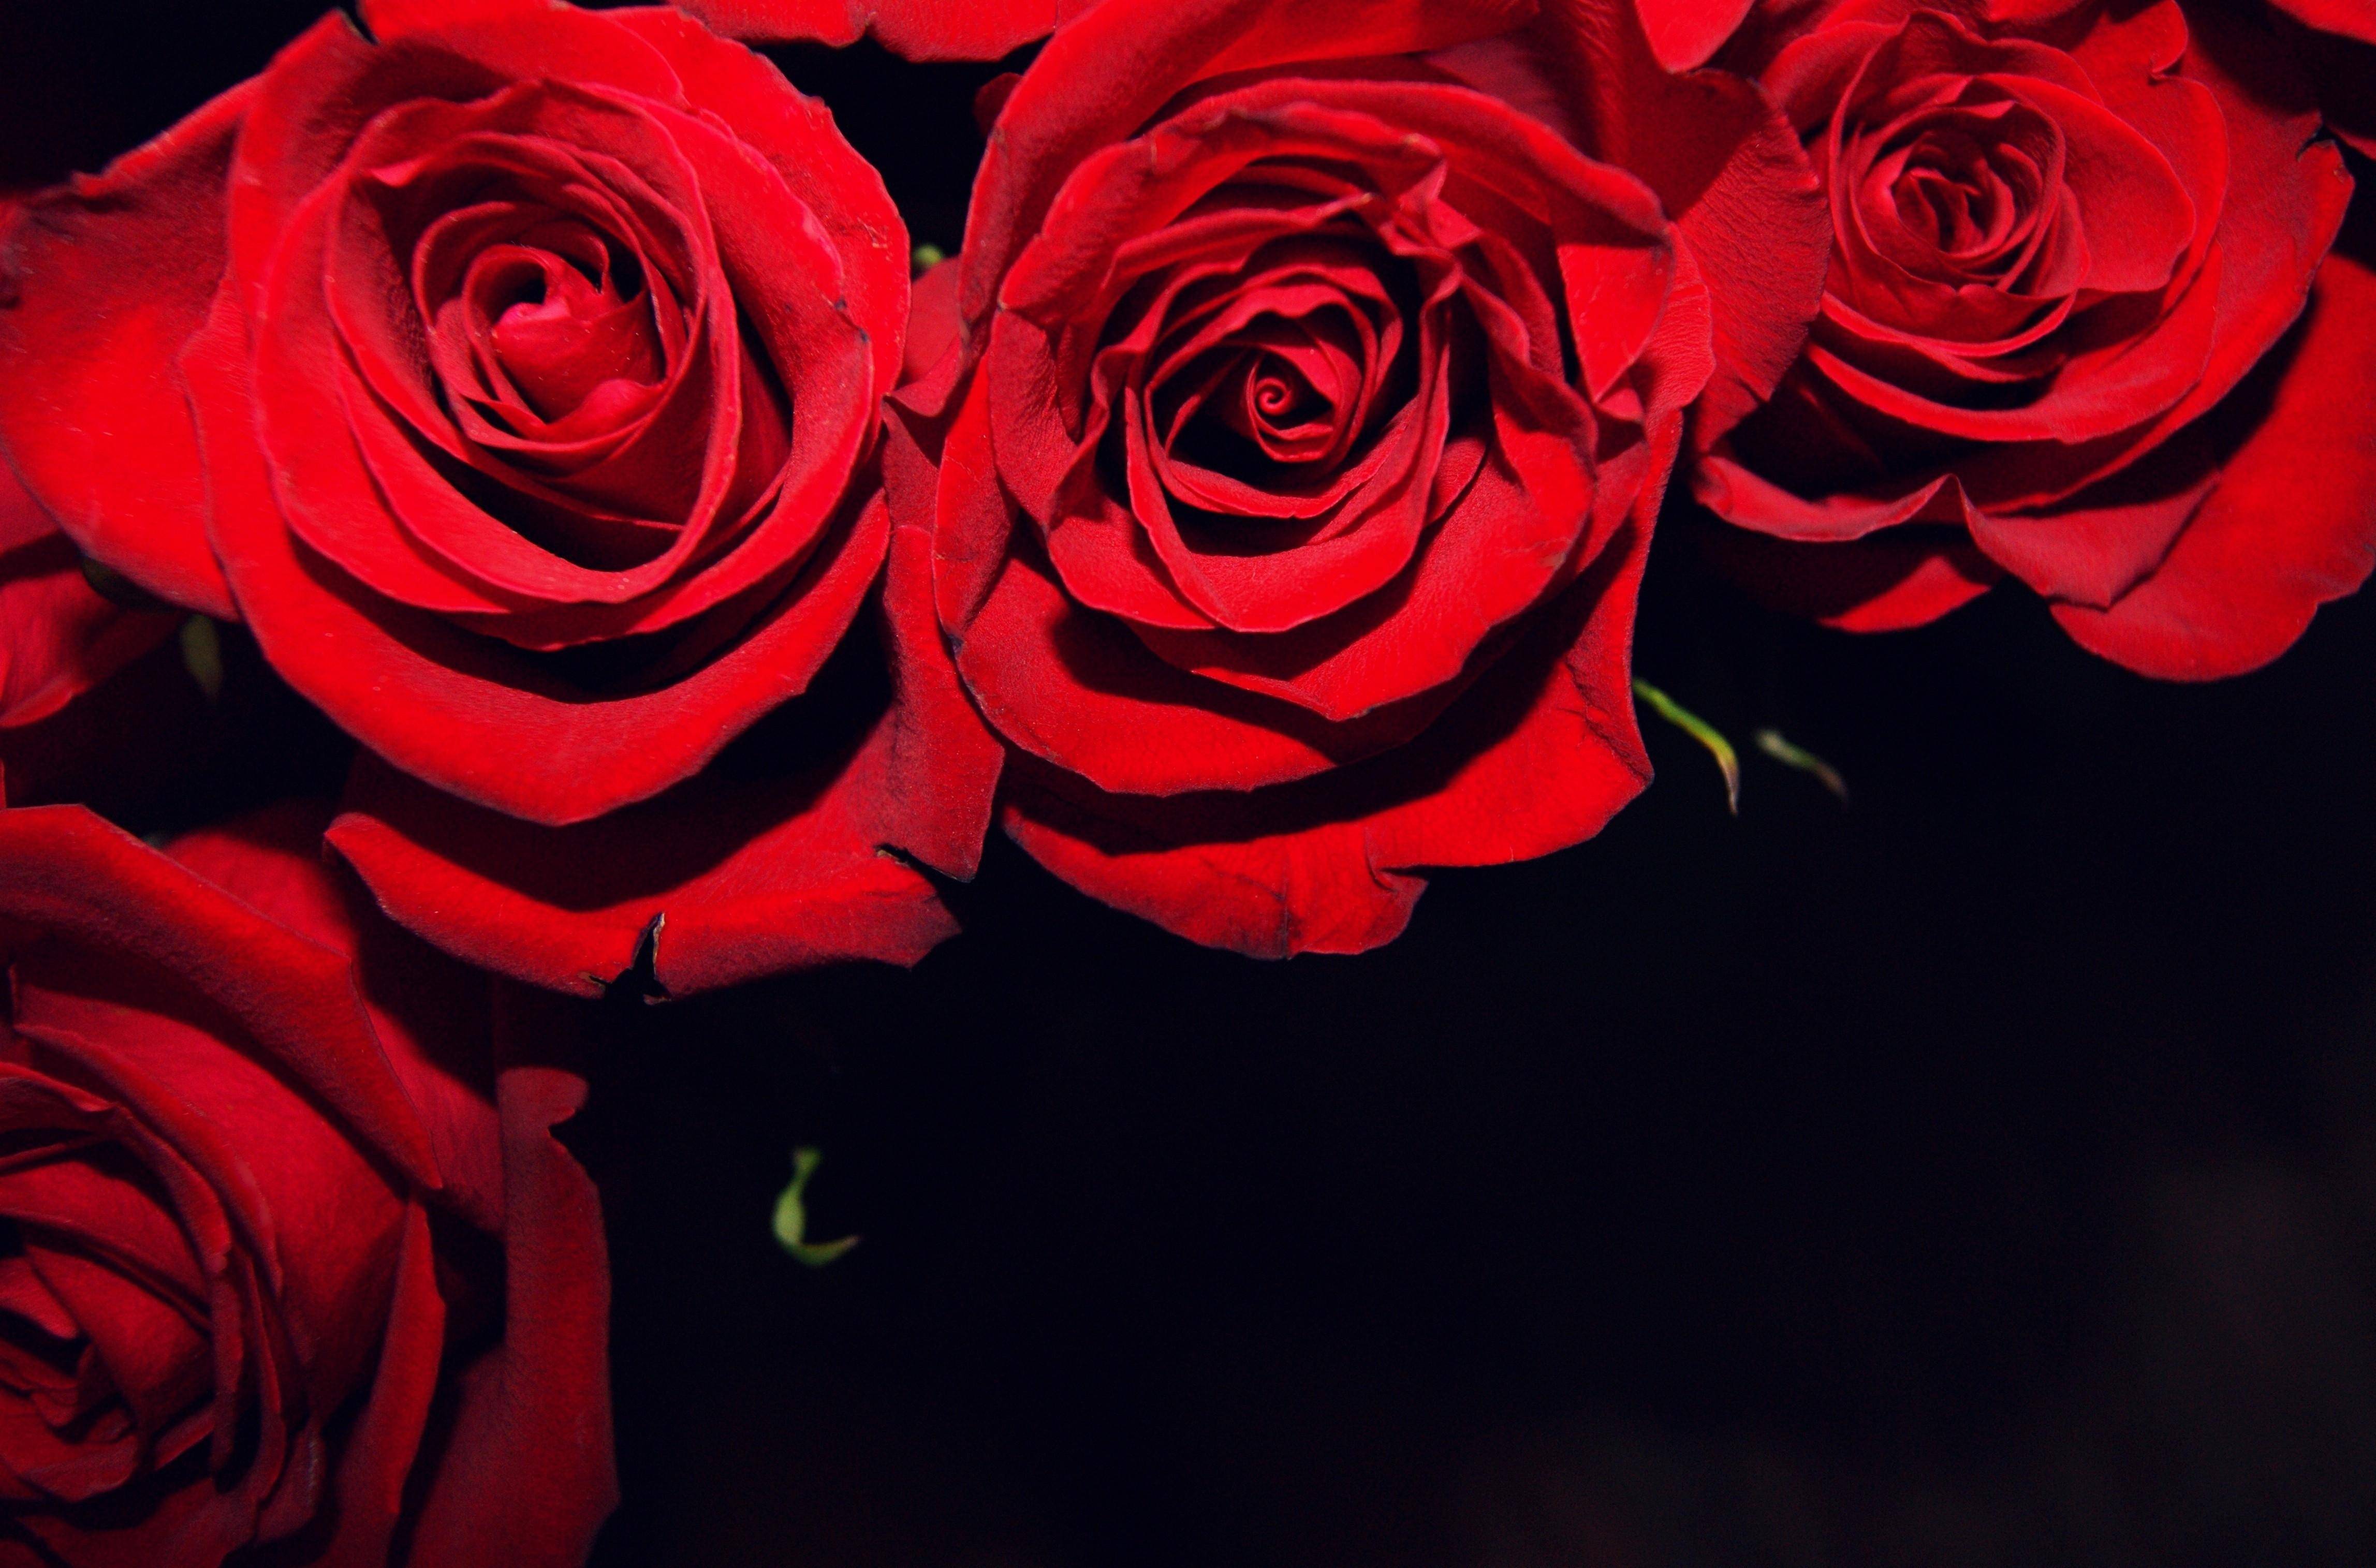 🔥 [47+] Red and Black Rose Wallpapers | WallpaperSafari